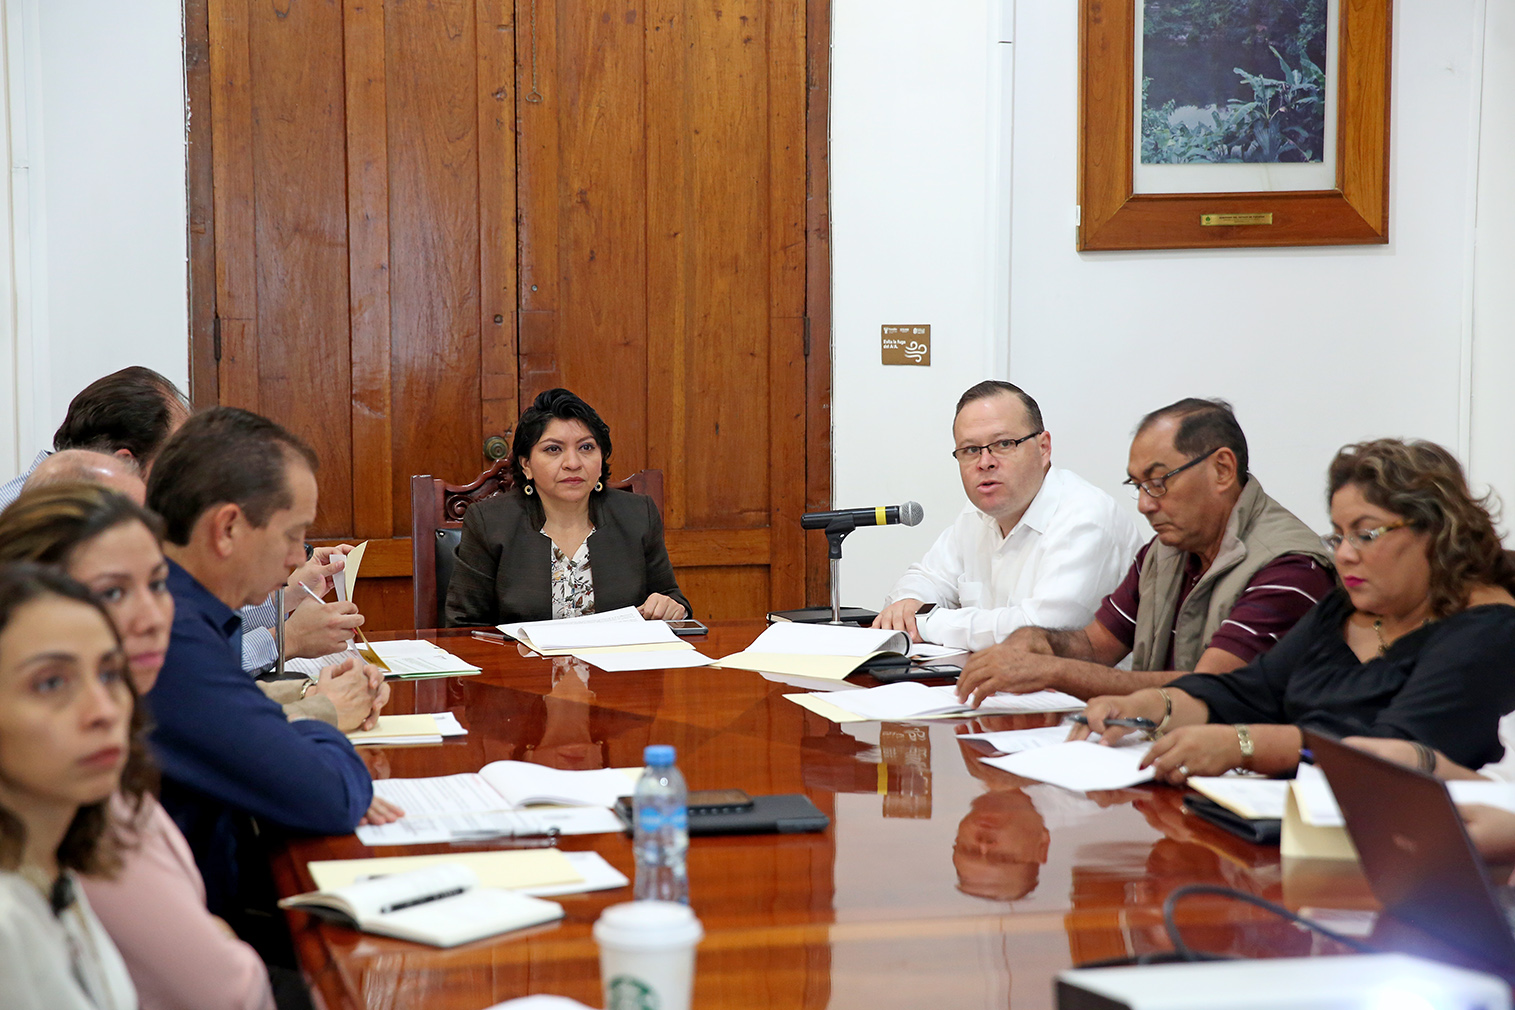 Consejeros financieros integrarán la Agencia para el Desarrollo de Yucatán